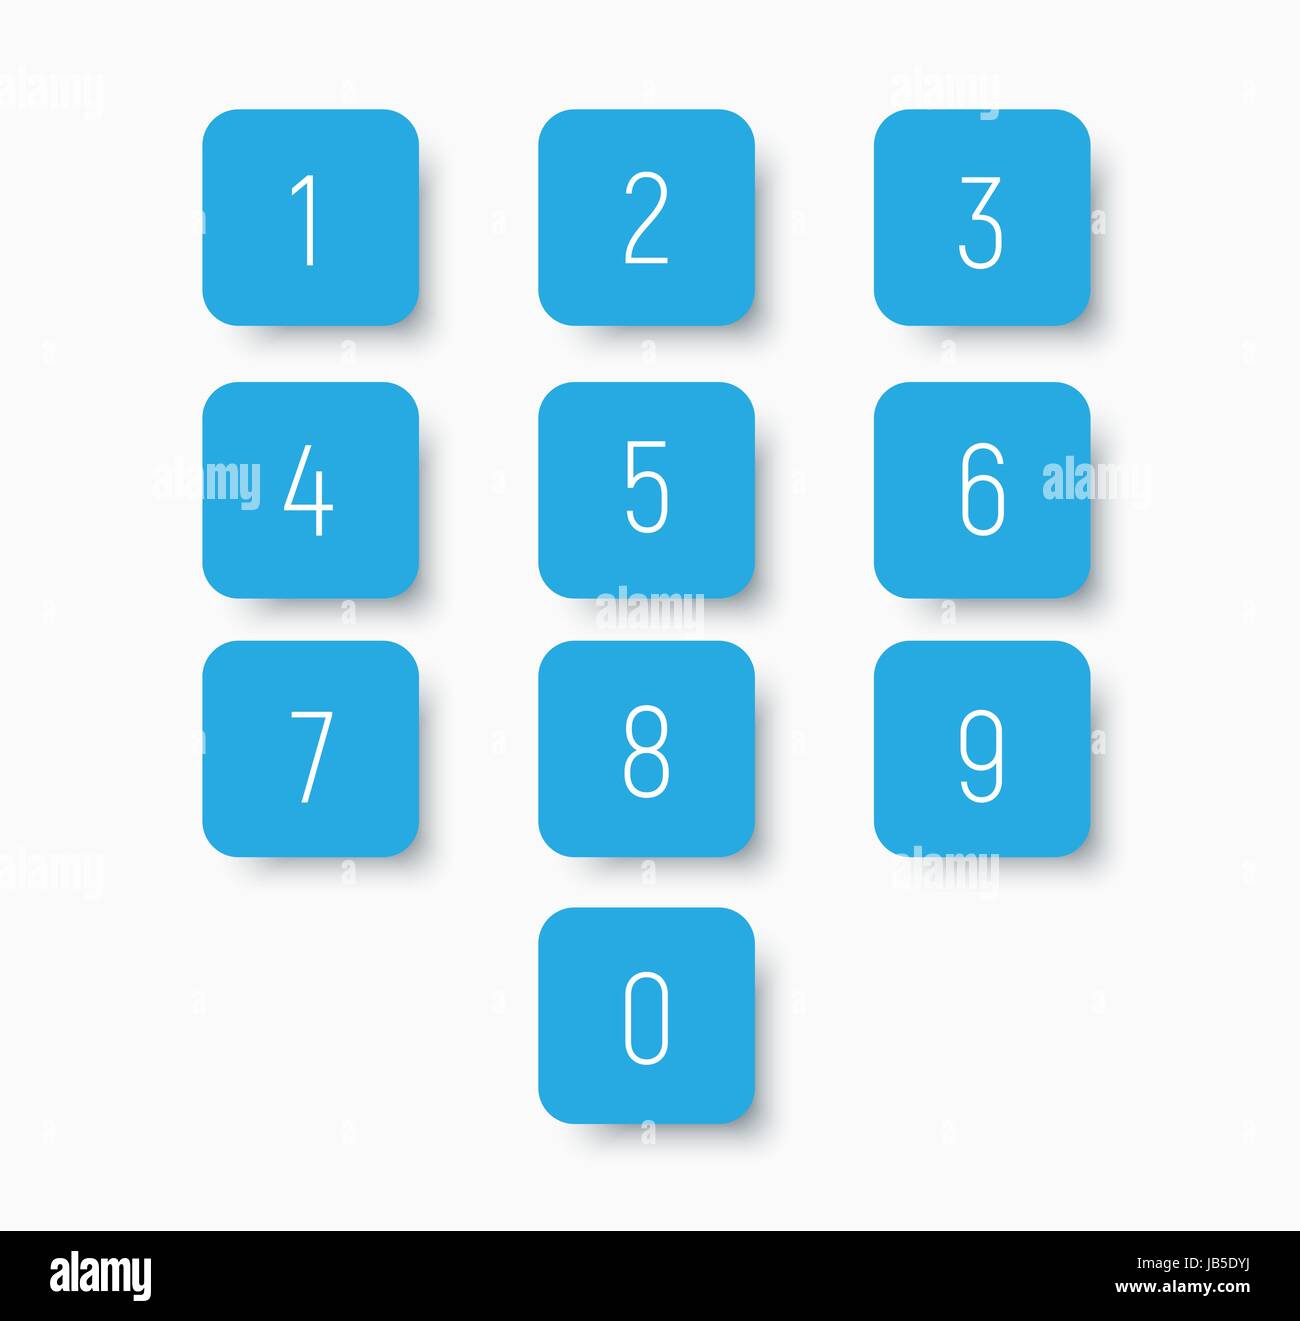 Der Blauen Tasten Mit Zahlen Von 0 Bis 9 Einstellen Vorlagen Fur Rechner Oder Zifferblatt Vektor Illustration Stock Vektorgrafik Alamy